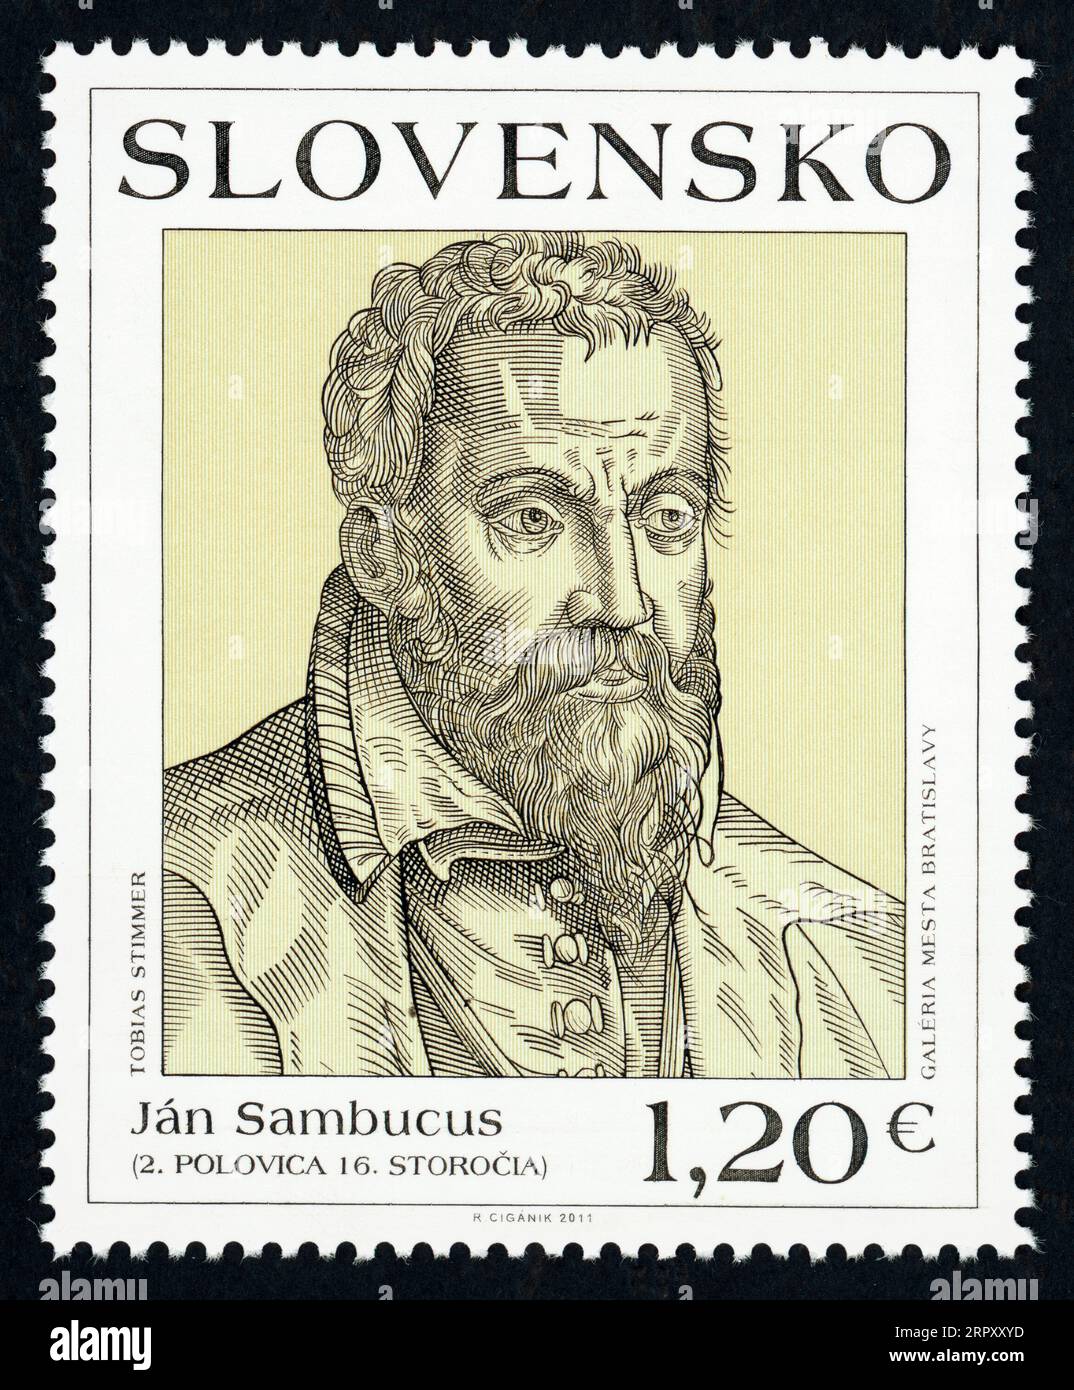 Ján Sambucus (1531 – 1584). Timbre-poste émis en Slovaquie en 2011. János Zsámboky ou János Zsámboki ou János Sámboki, (de son nom humaniste latin : Johannes Sambucus, ou Johannes Pannonicus Sambucus) est un érudit humaniste hongrois : médecin, philologue et historien. Sambucus est né à Trnava (aujourd'hui Slovaquie). Banque D'Images